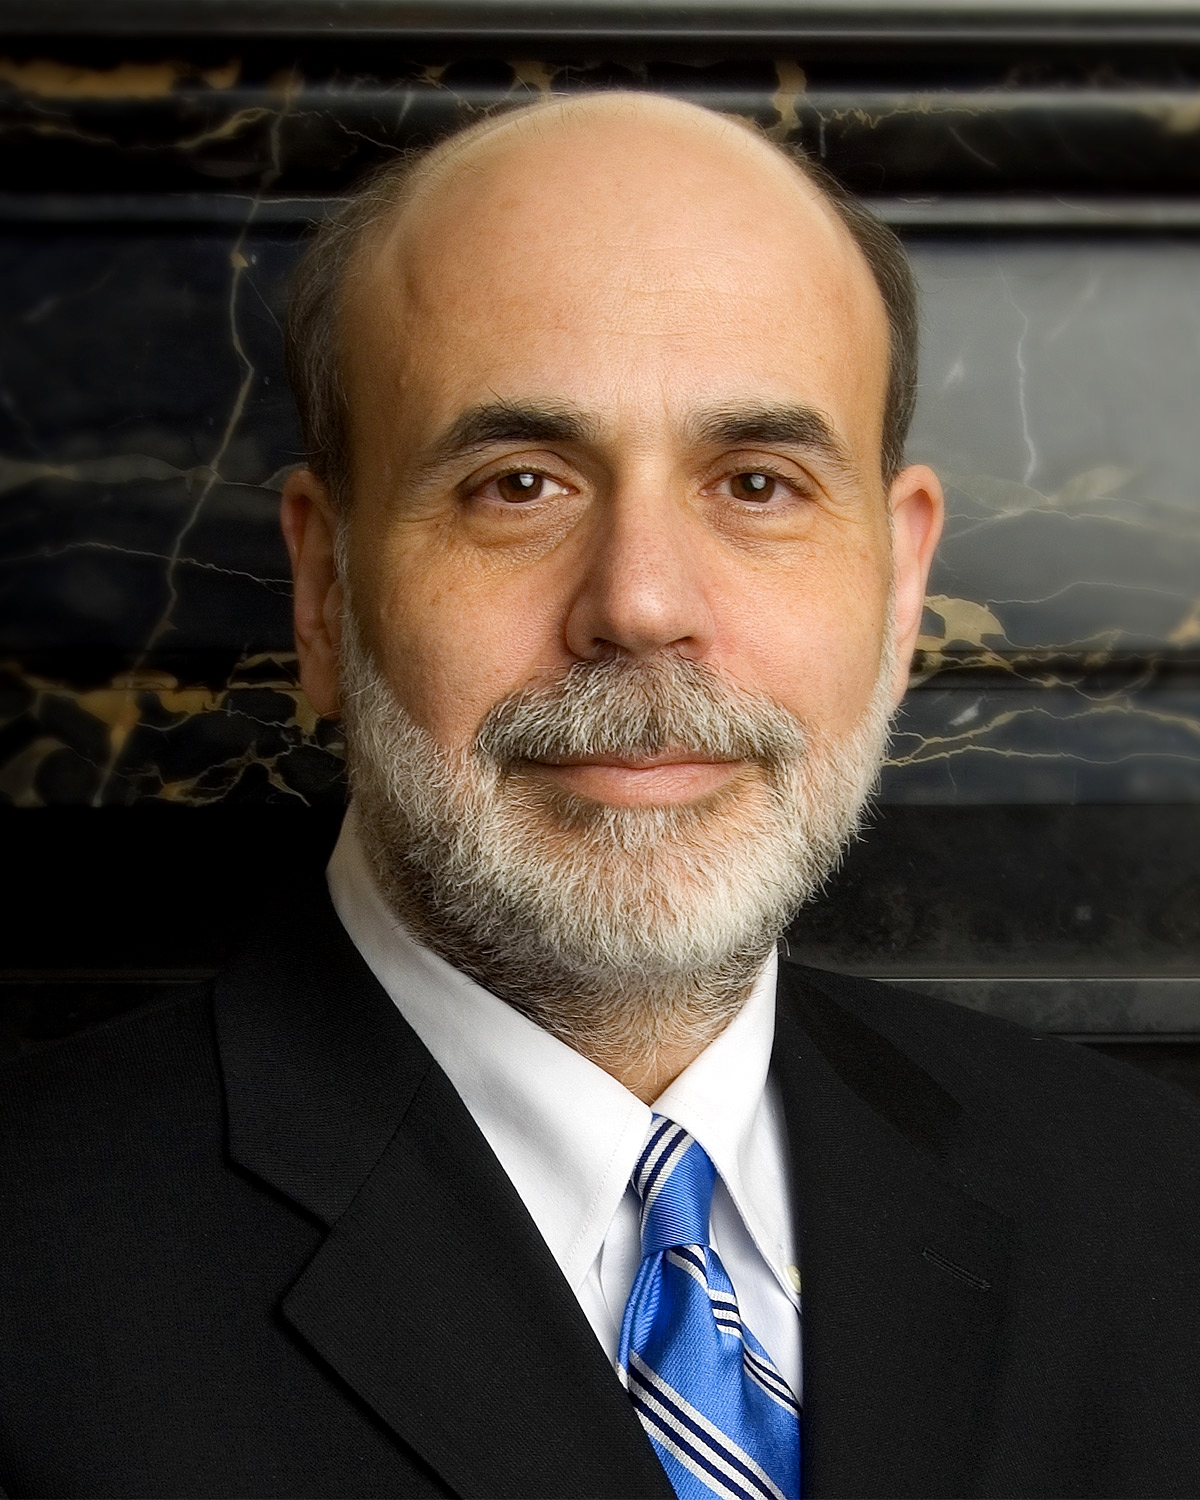 auteur Ben Bernanke de la citation En vertu de la loi actuelle, le 1er janvier 2013, il y aura une falaise budgétaire massive de réductions de dépenses importantes et d'augmentation des impôts.